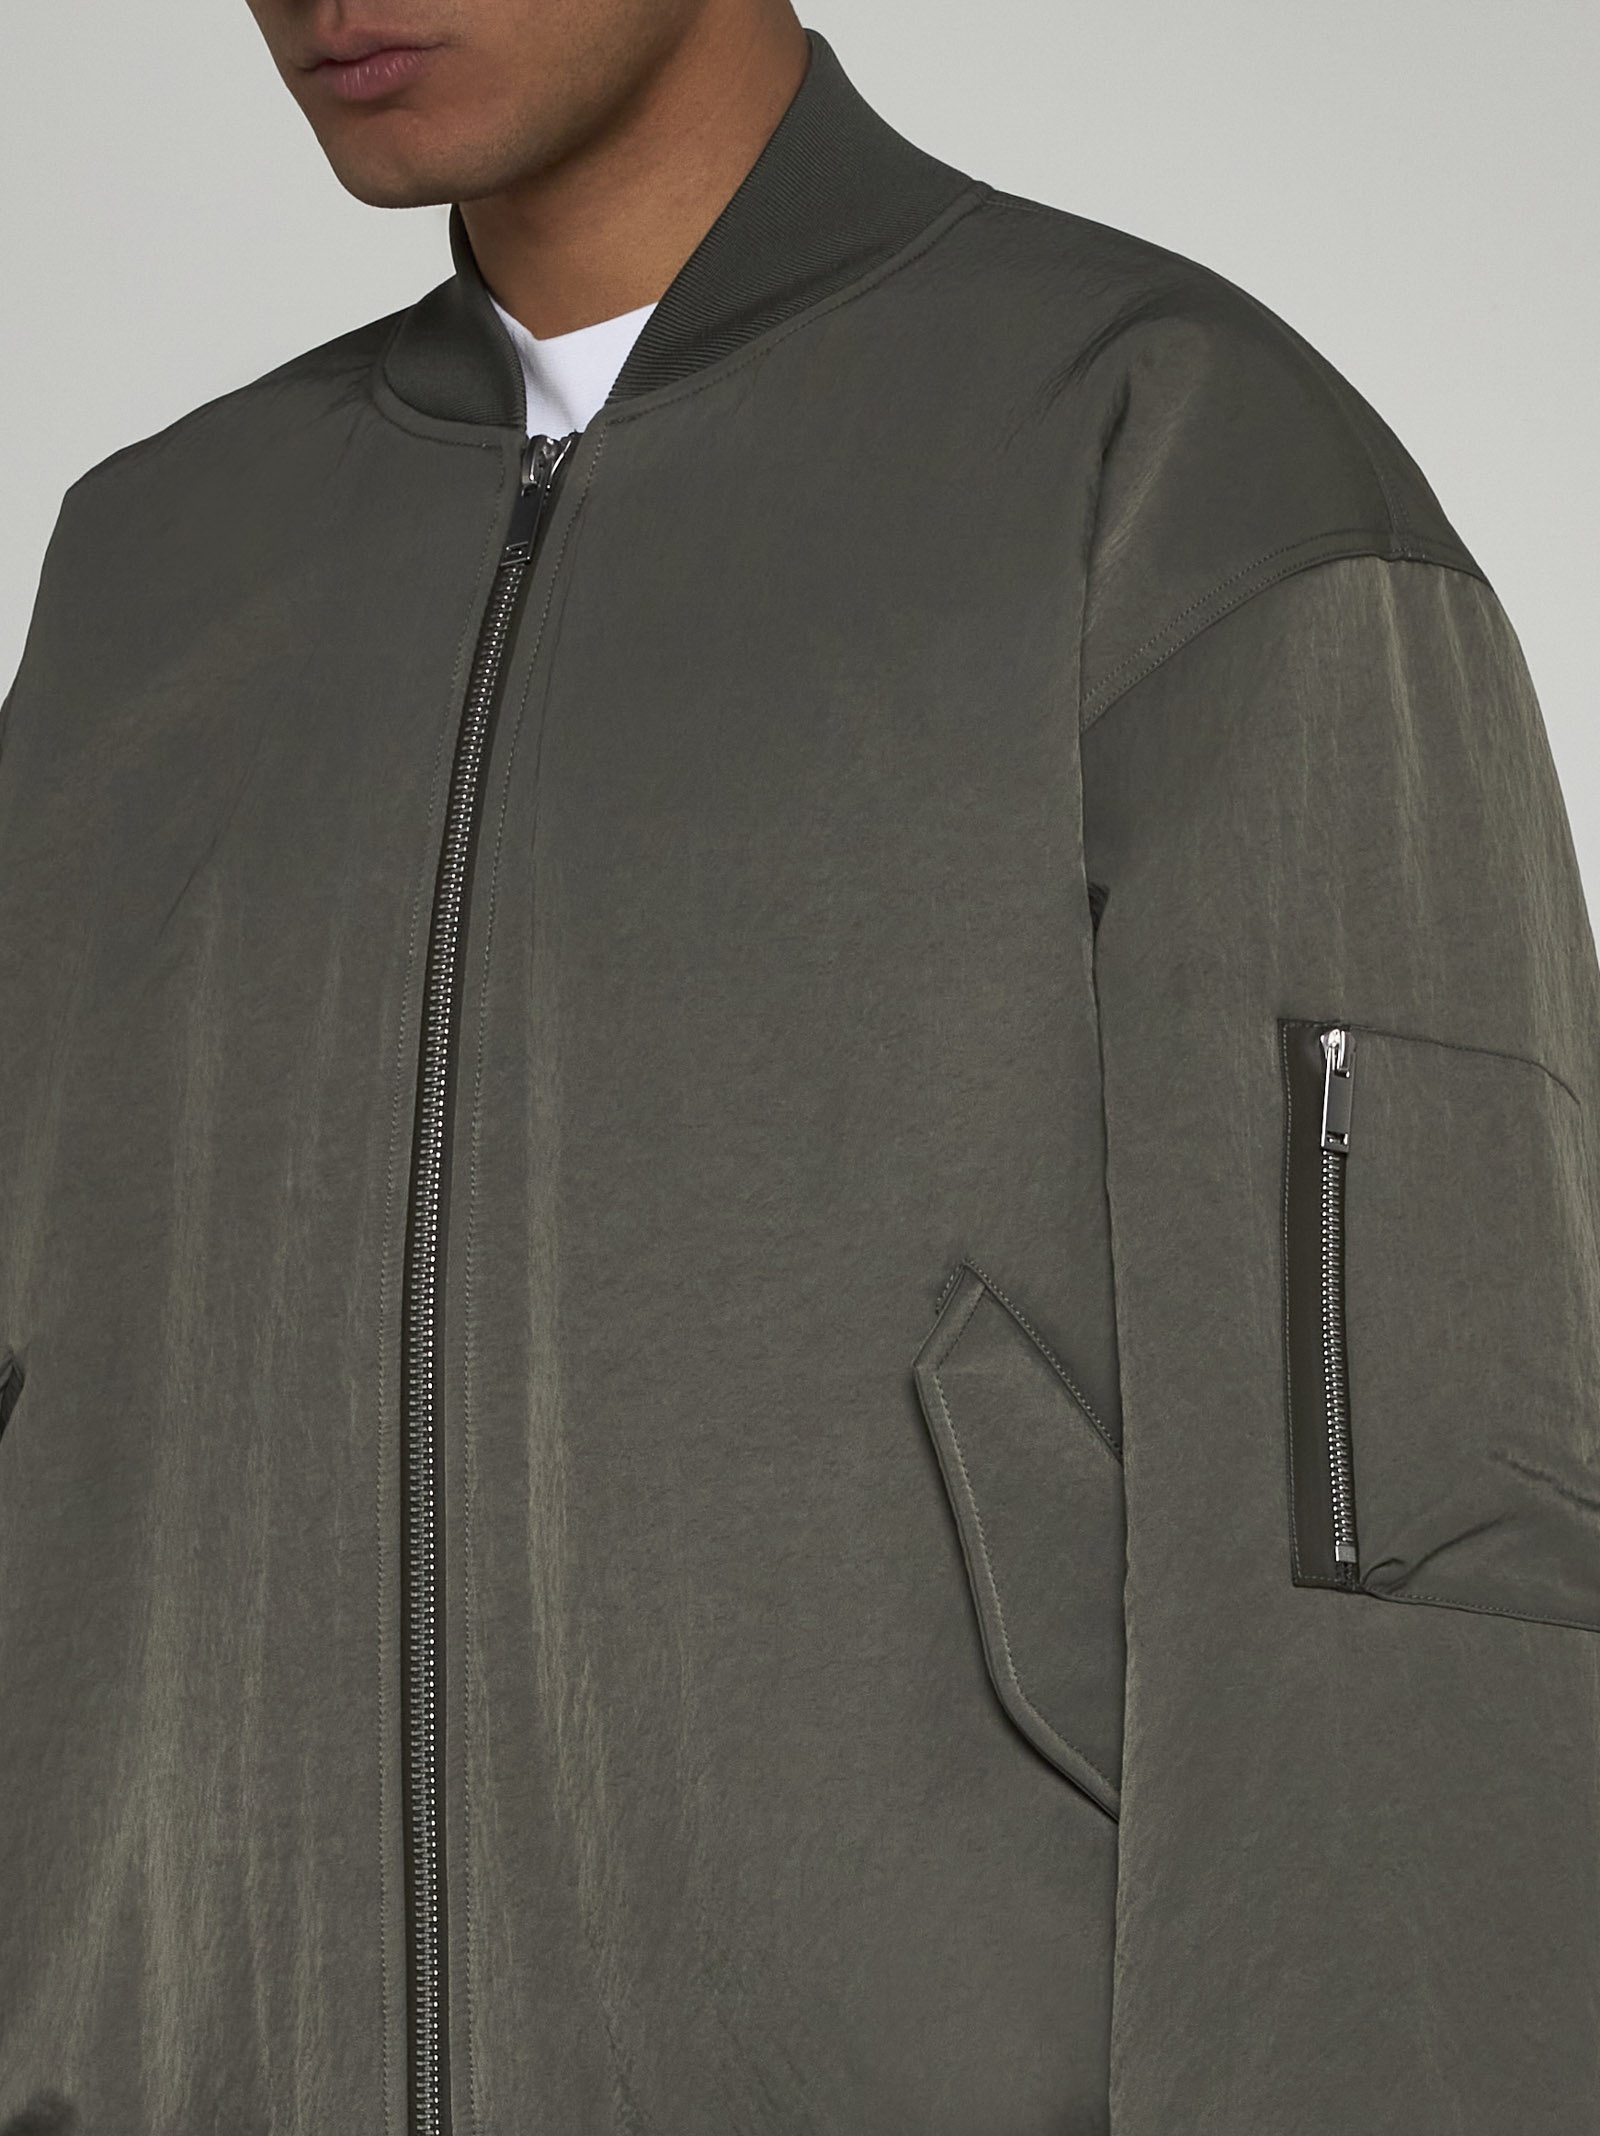 Leroy nylon bomber jacket - 4